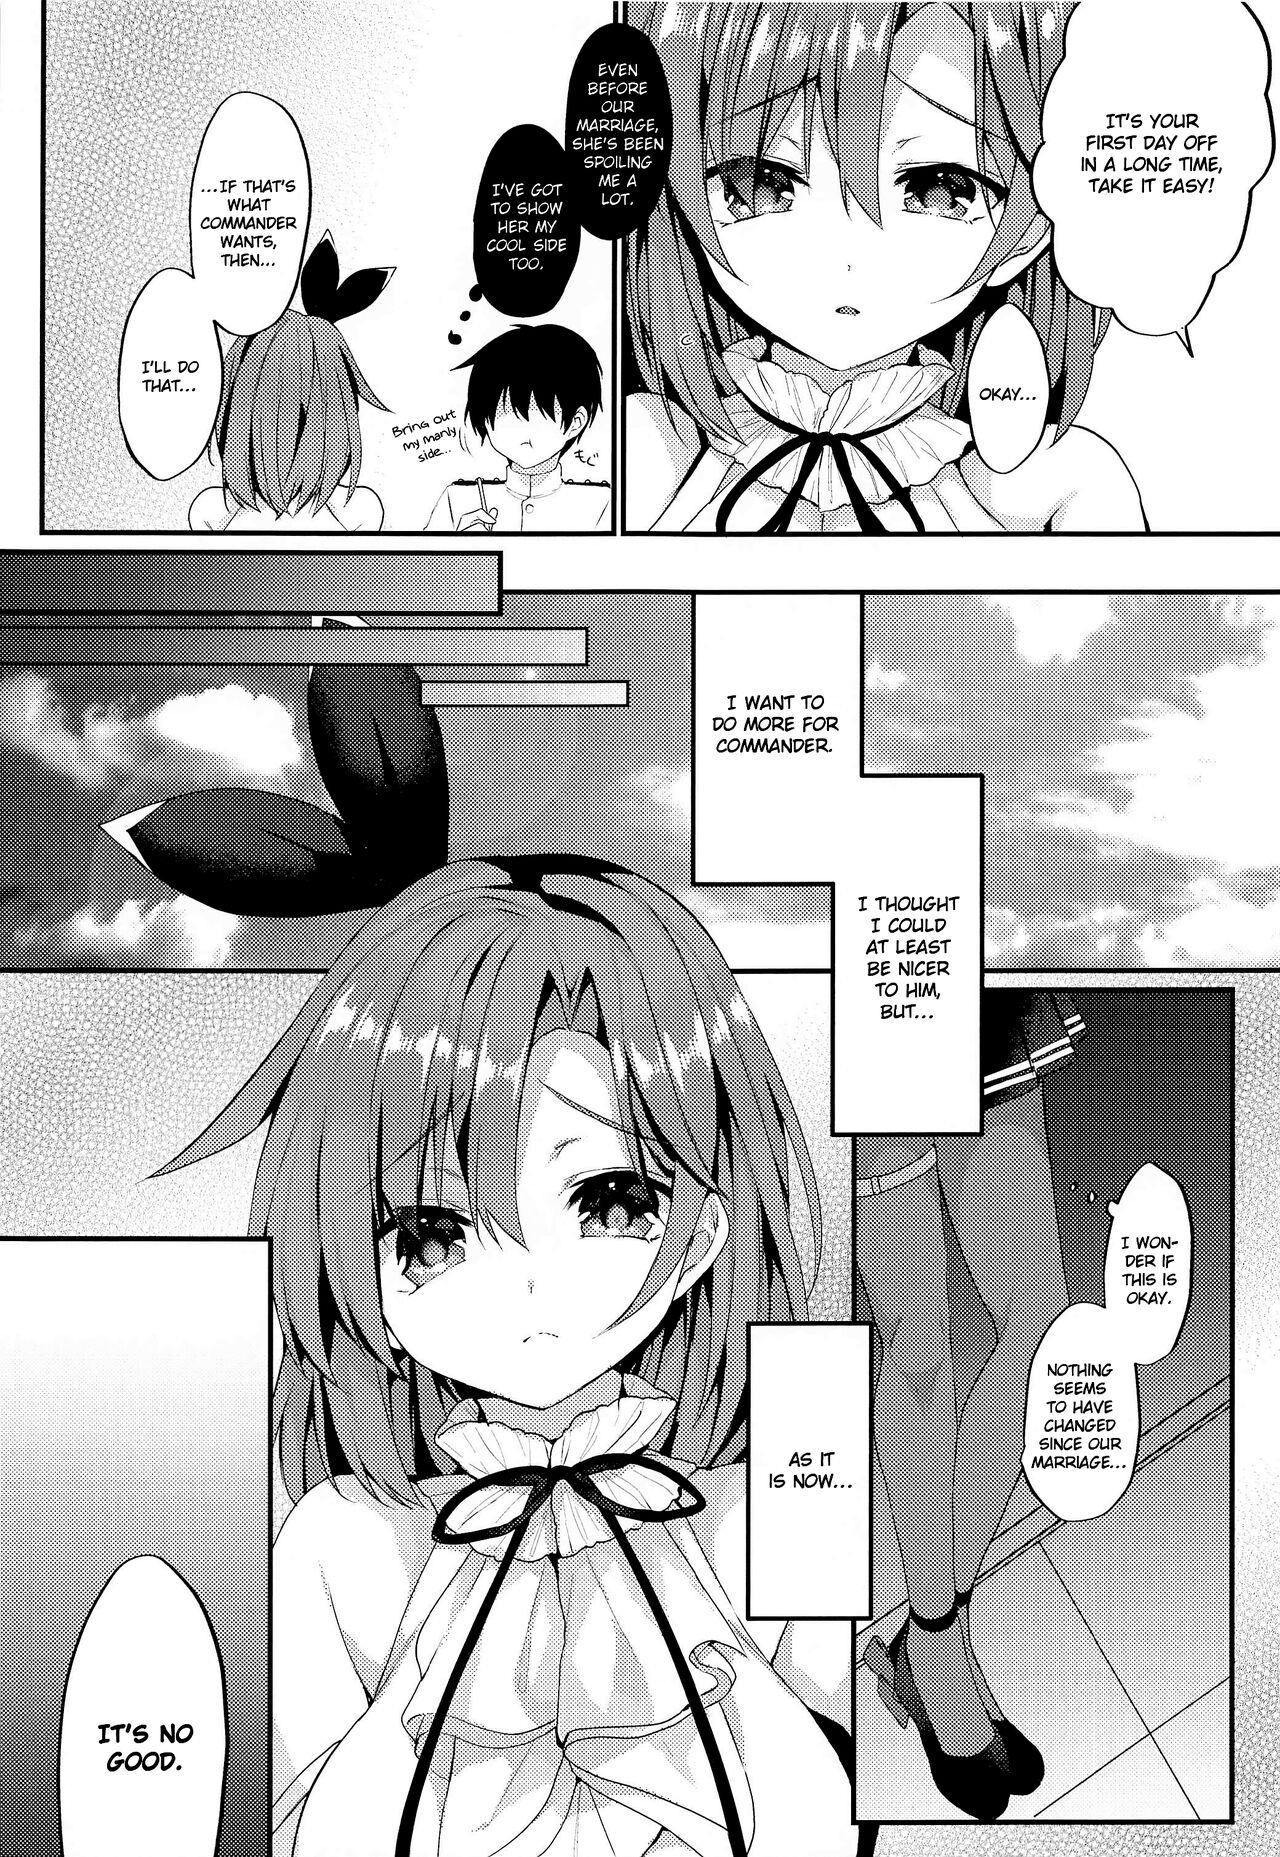 Small Tits Yasashiku Shitai no | I Want to Be Nicer to You - Azur lane Flagra - Page 5